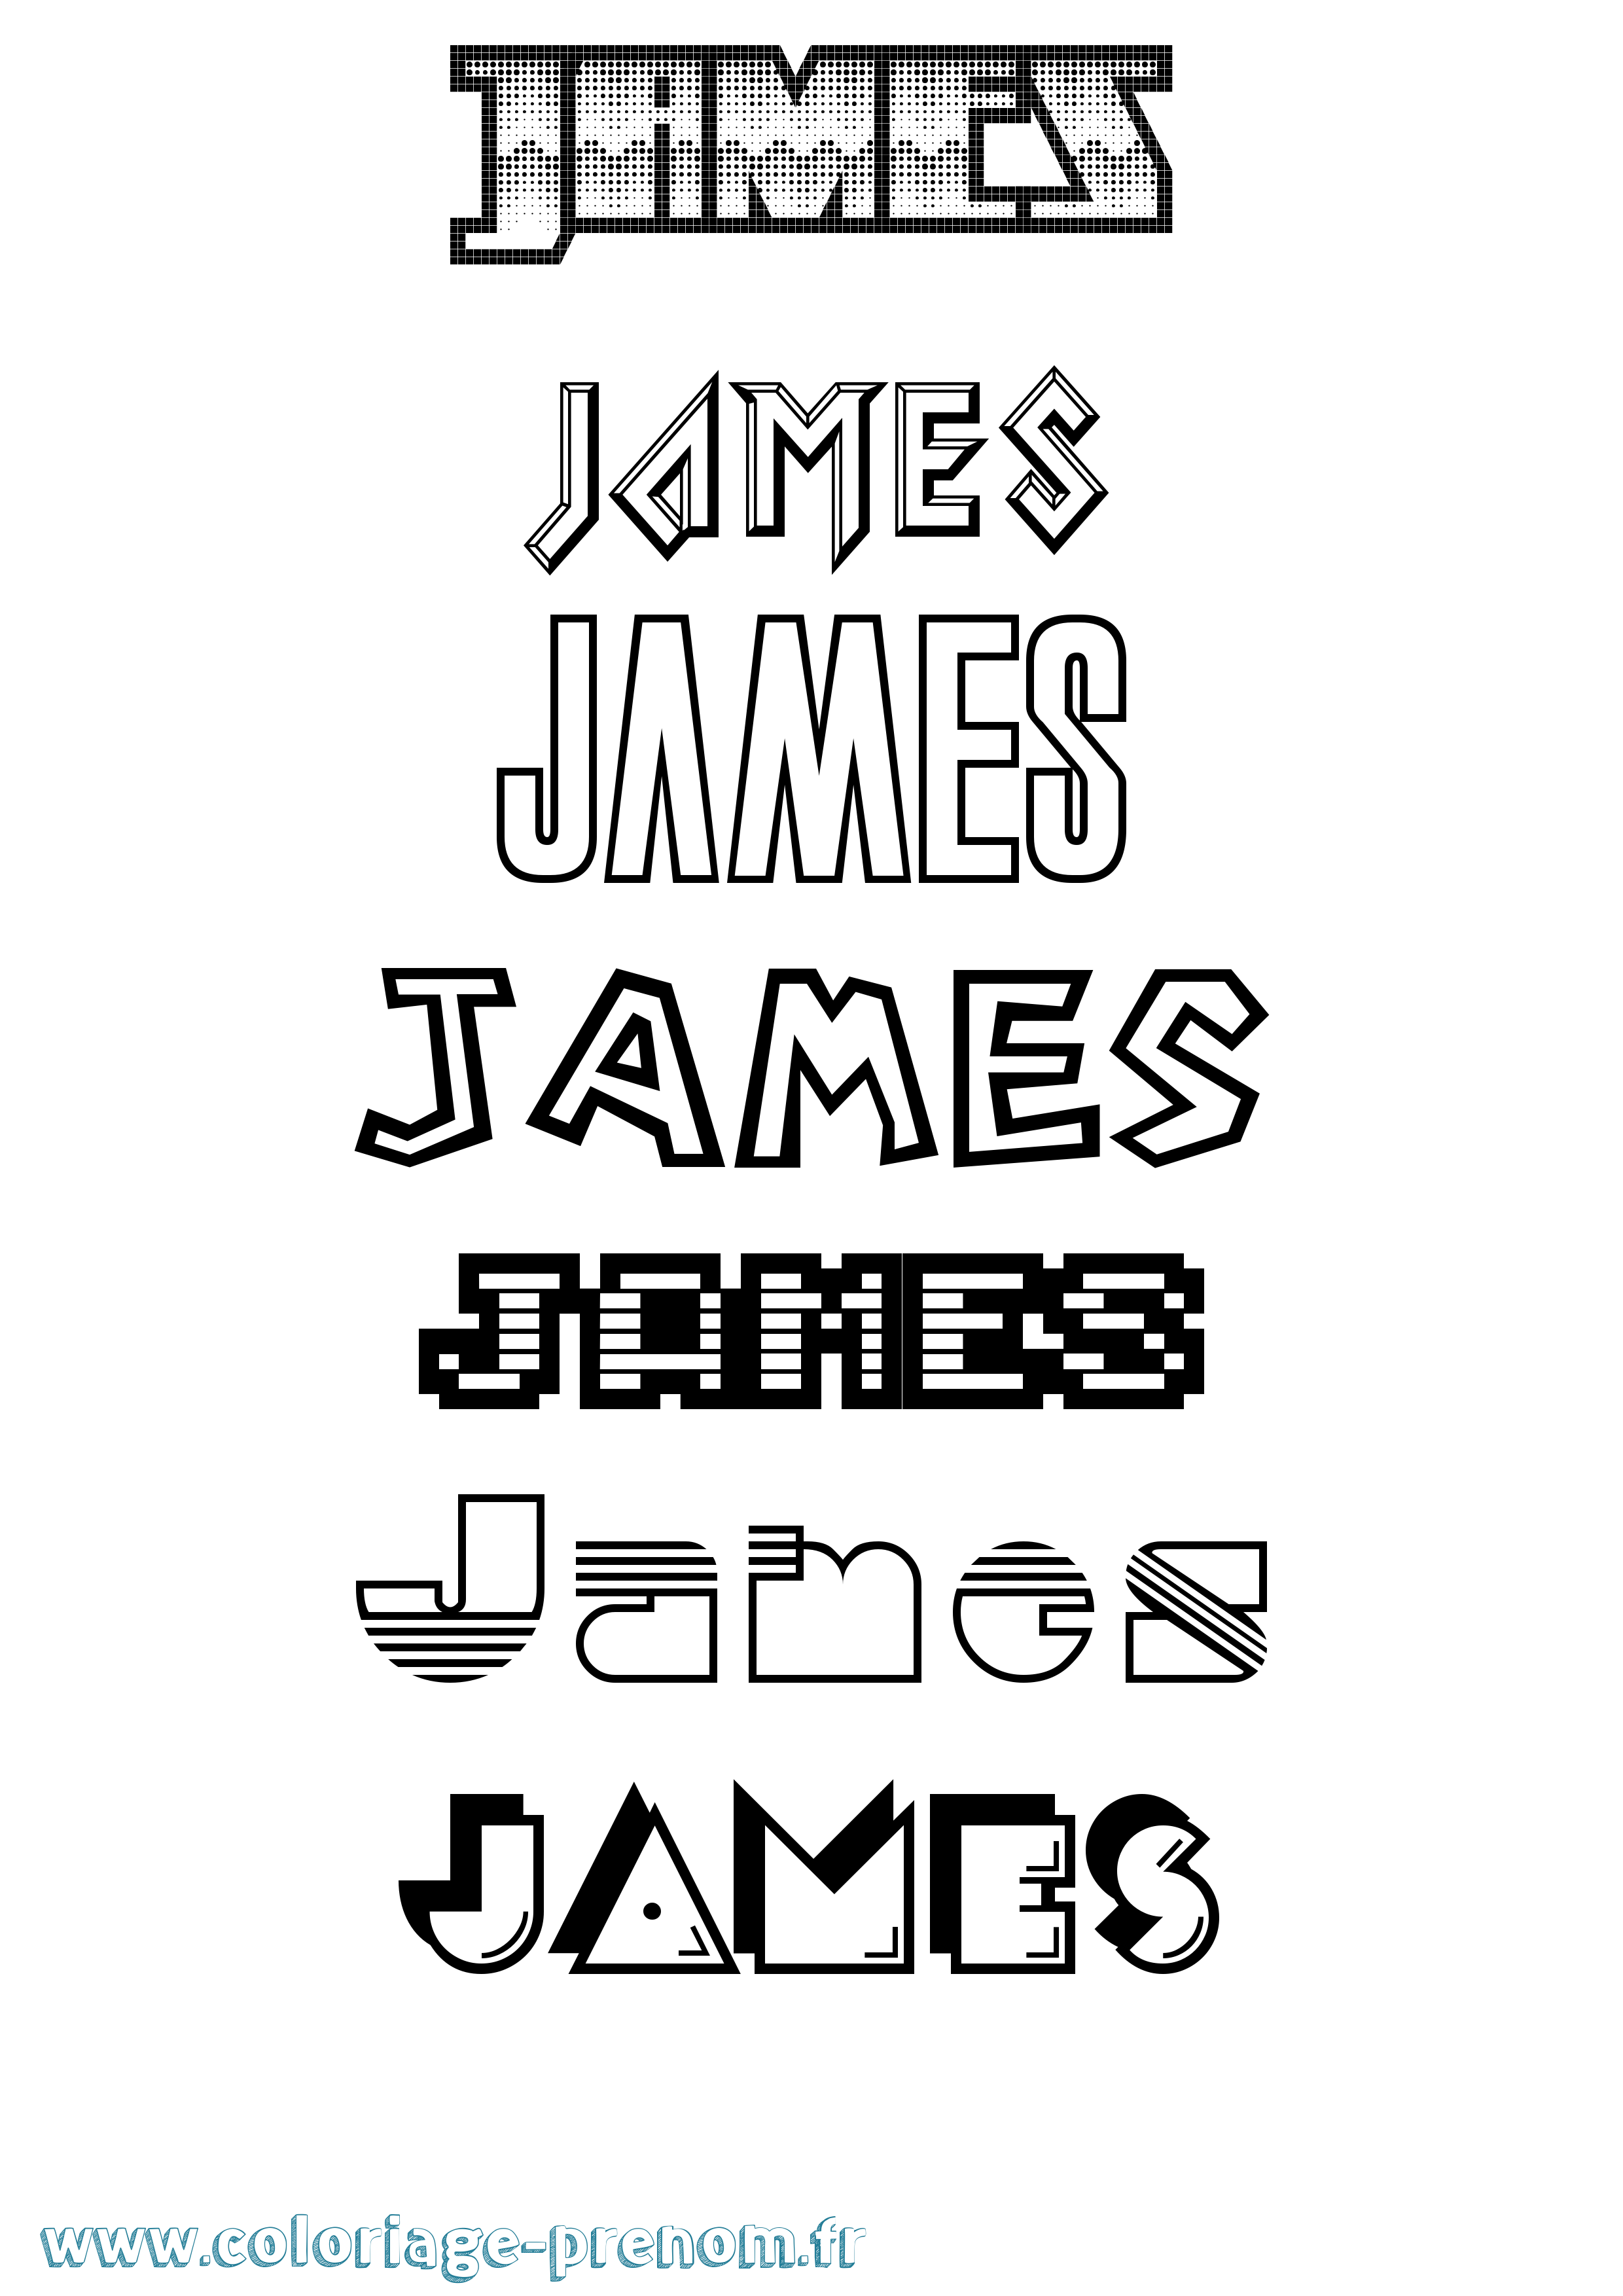 Coloriage prénom James Jeux Vidéos